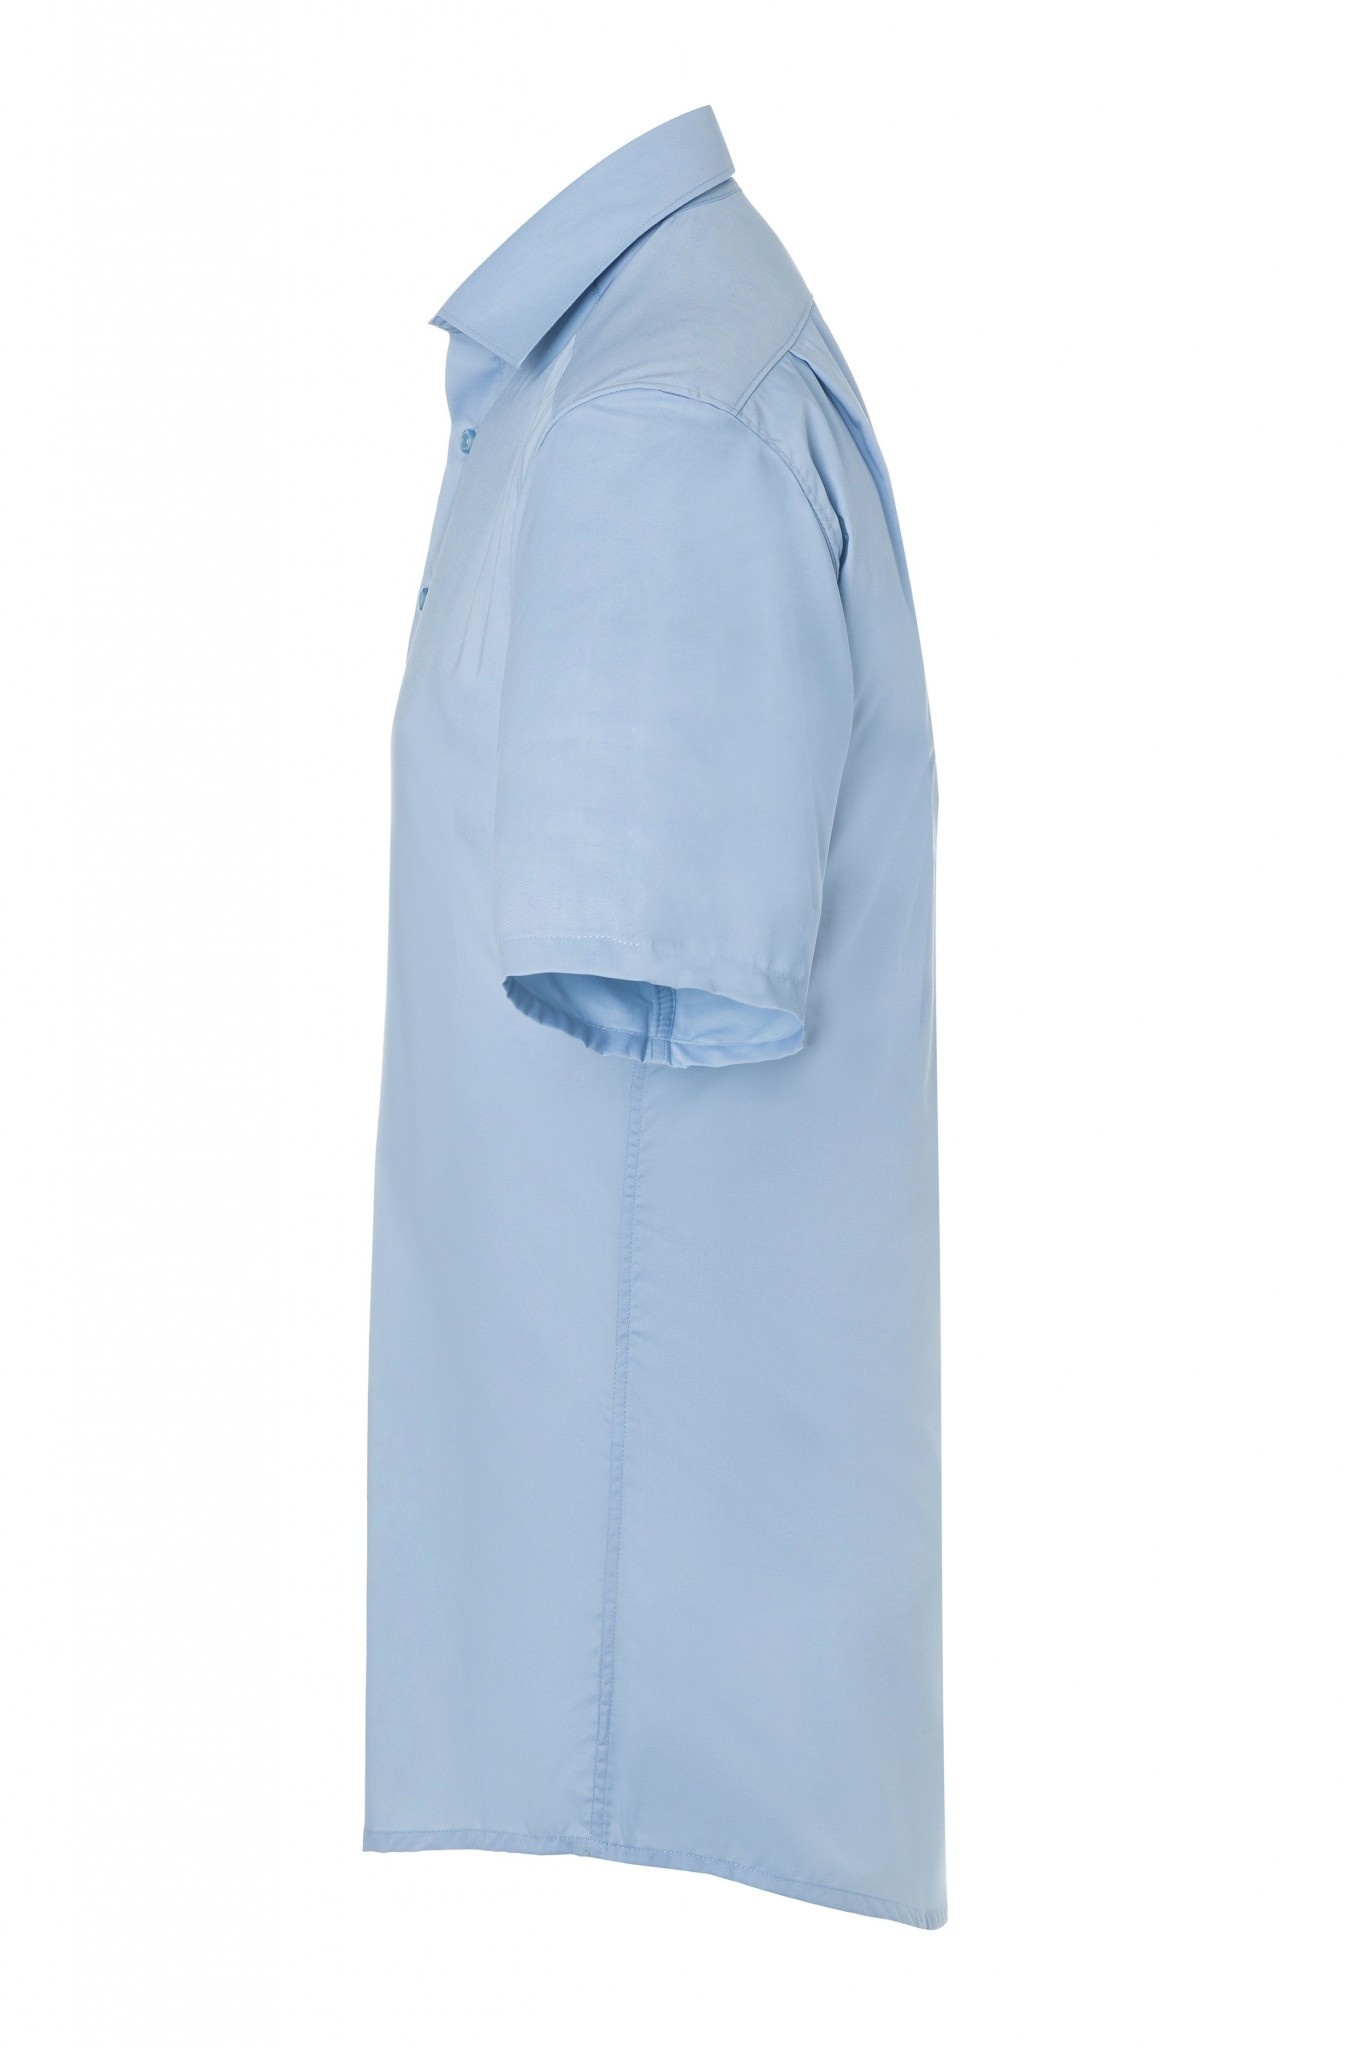 Herrenhemd Jona | Hellblau | 49% Polyester / 49% Baumwolle / 2% Elastolefin | Erhältlich in 8 Größen